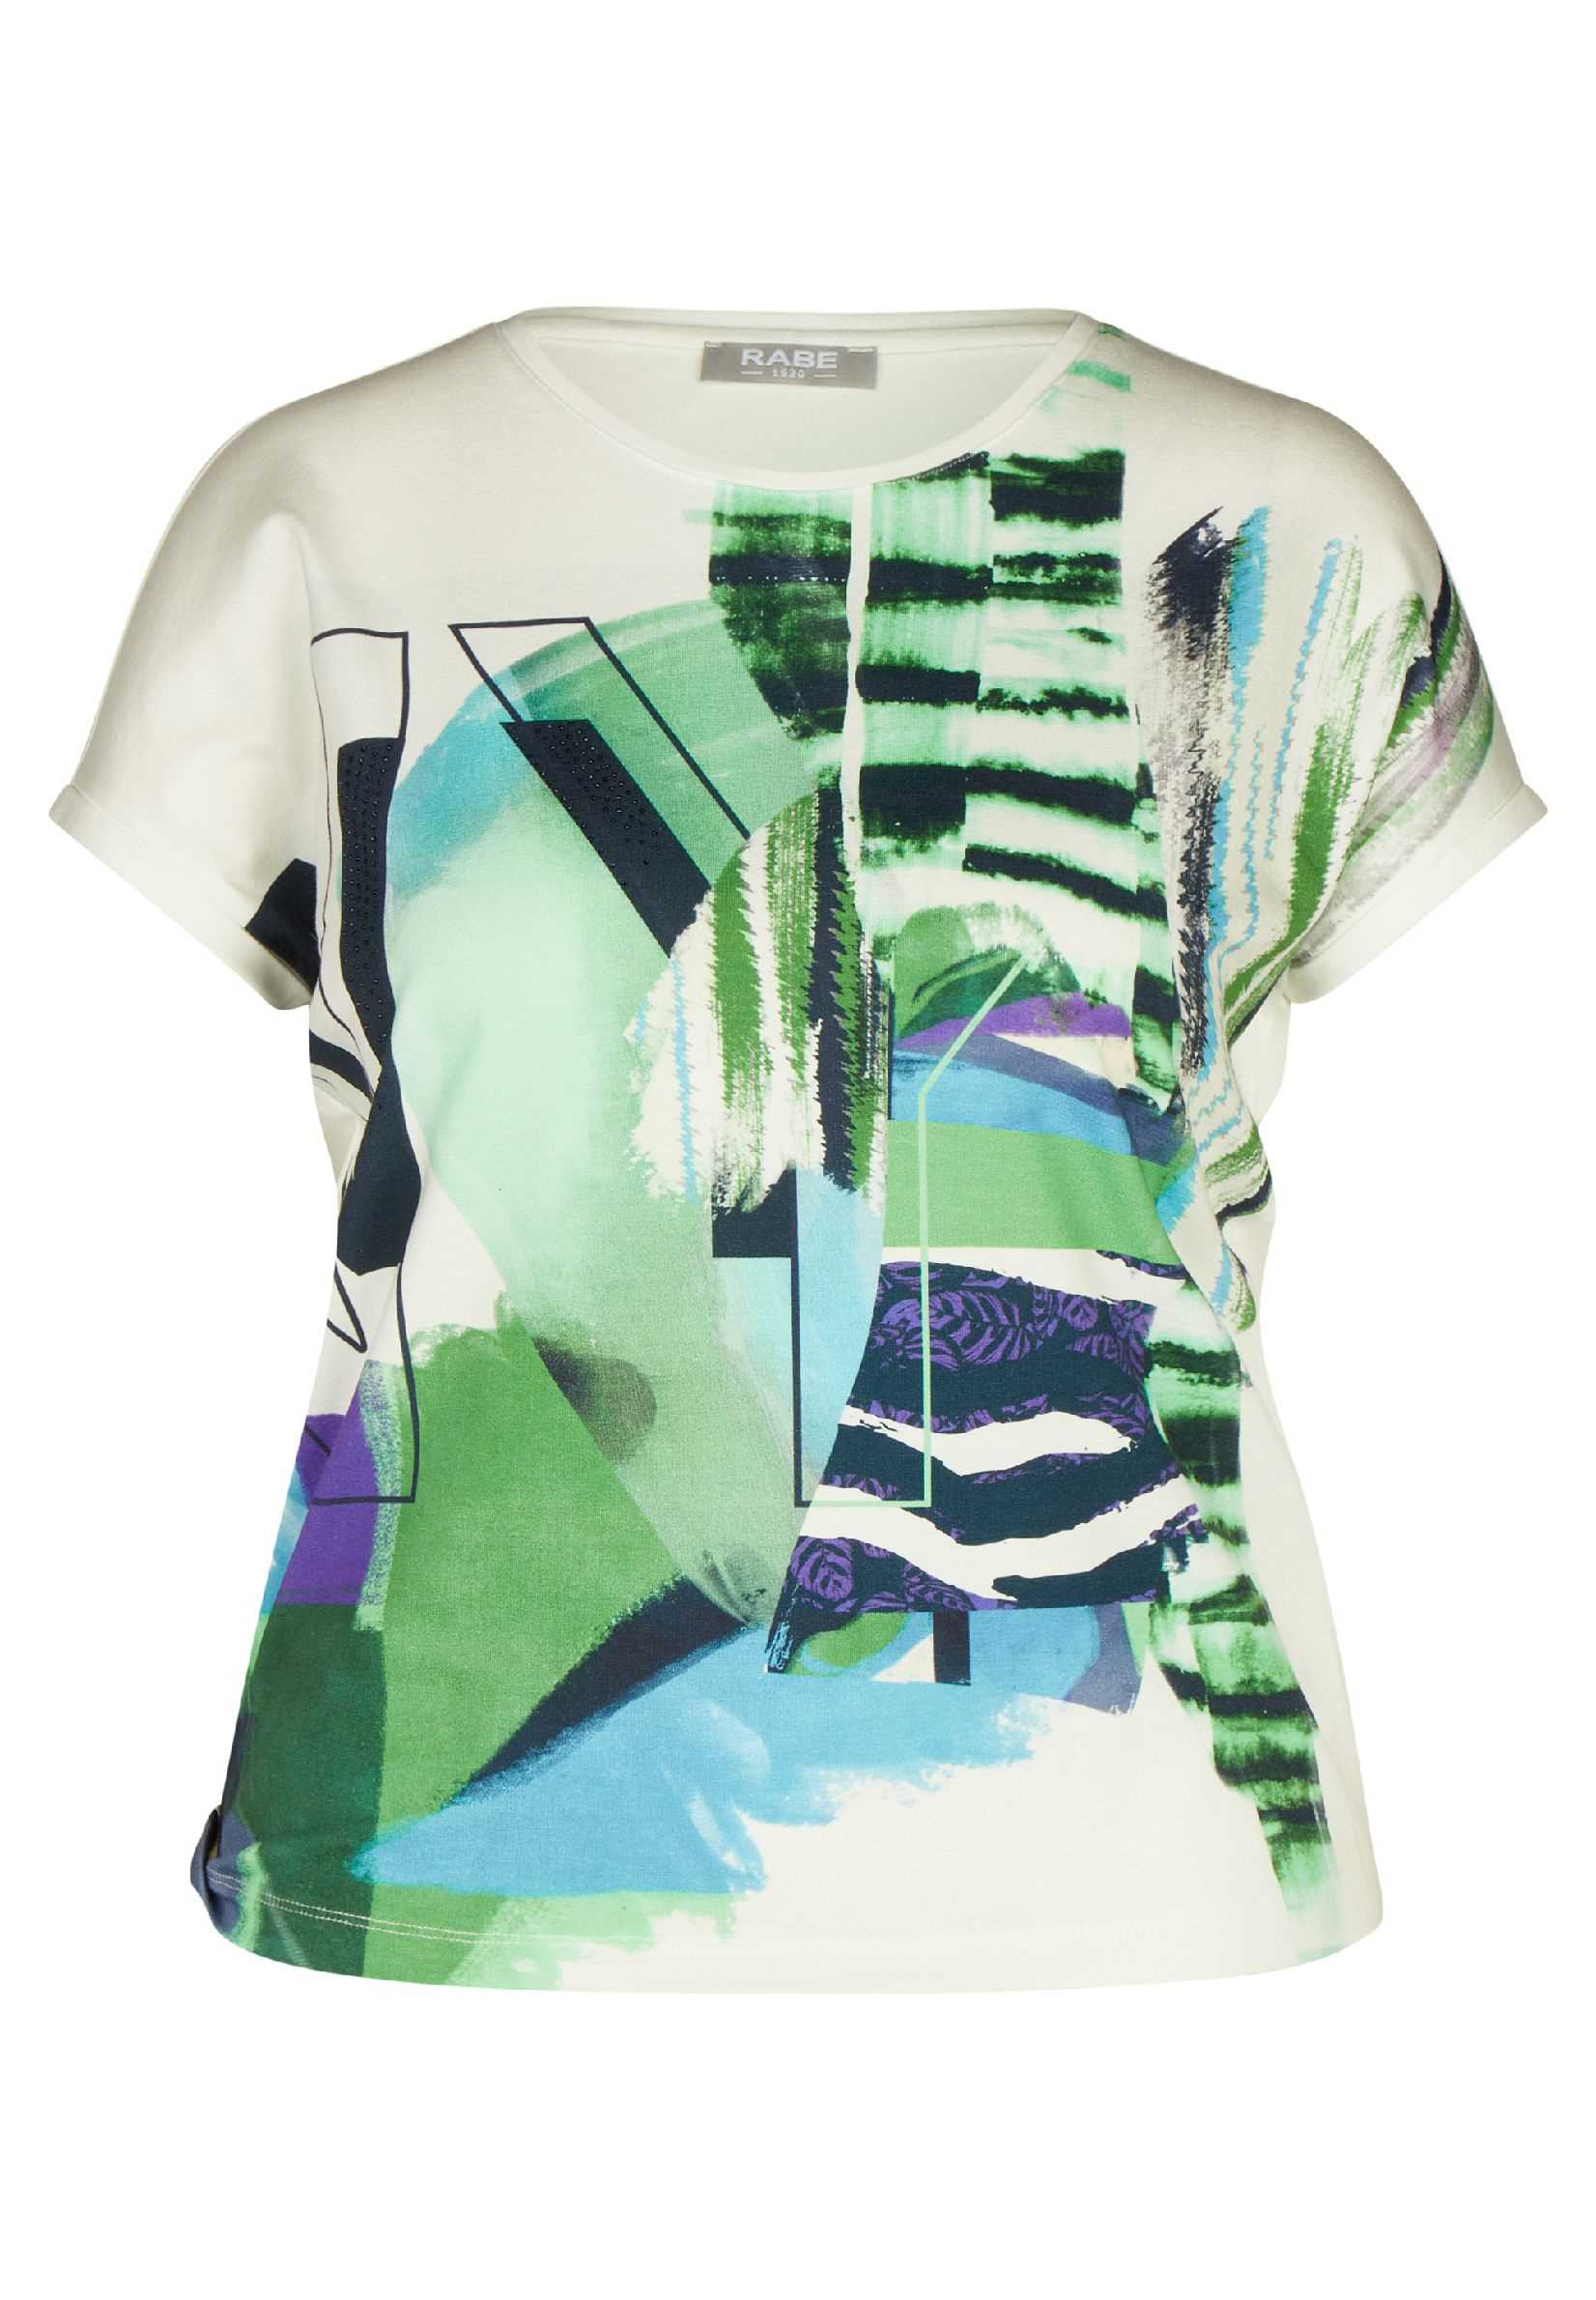 T-Shirt Exclusief Daniëlle Print / E Mode | Groen Rabe Natur Mariëlle